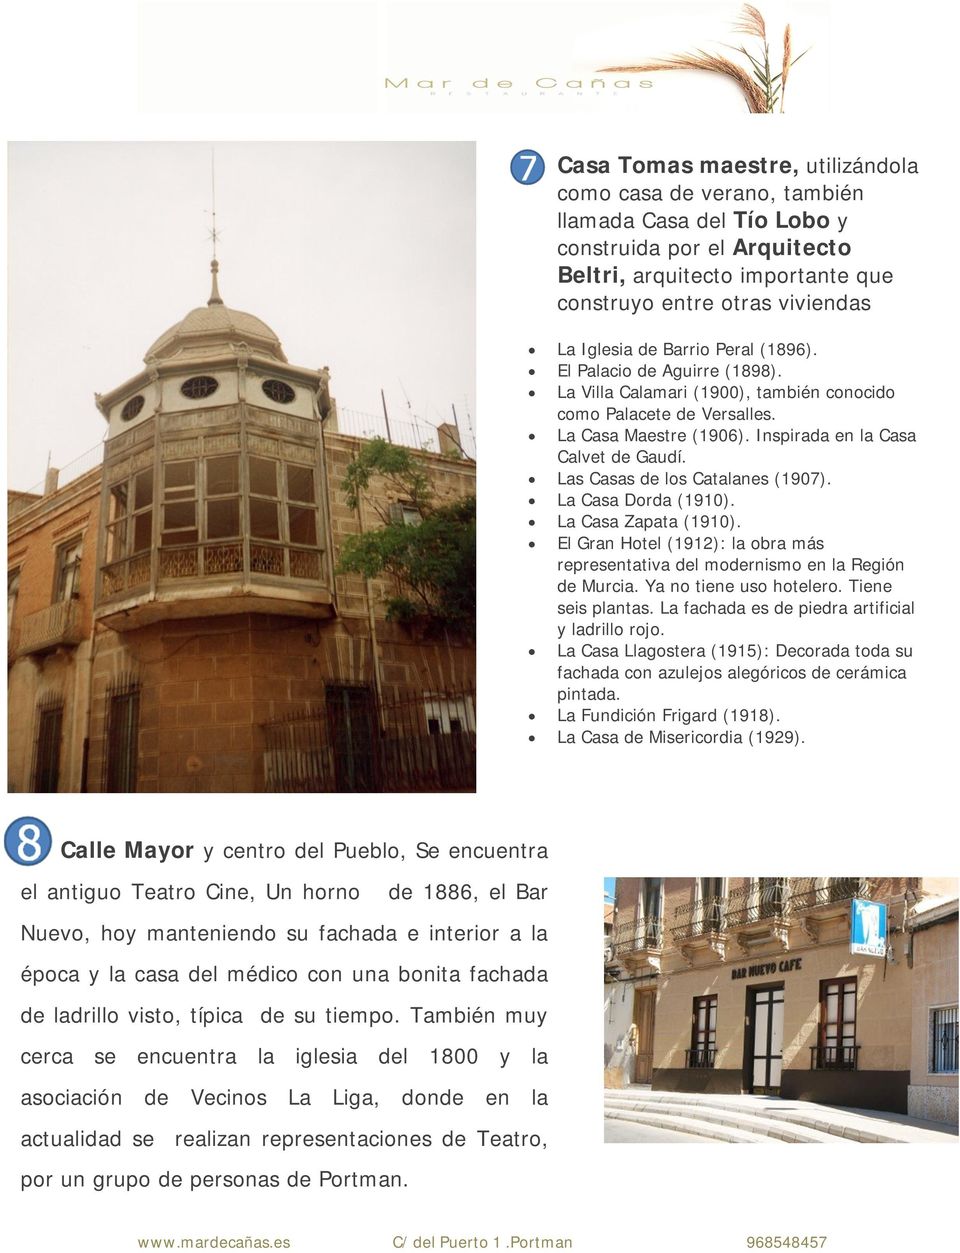 Las Casas de los Catalanes (1907). La Casa Dorda (1910). La Casa Zapata (1910). El Gran Hotel (1912): la obra más representativa del modernismo en la Región de Murcia. Ya no tiene uso hotelero.